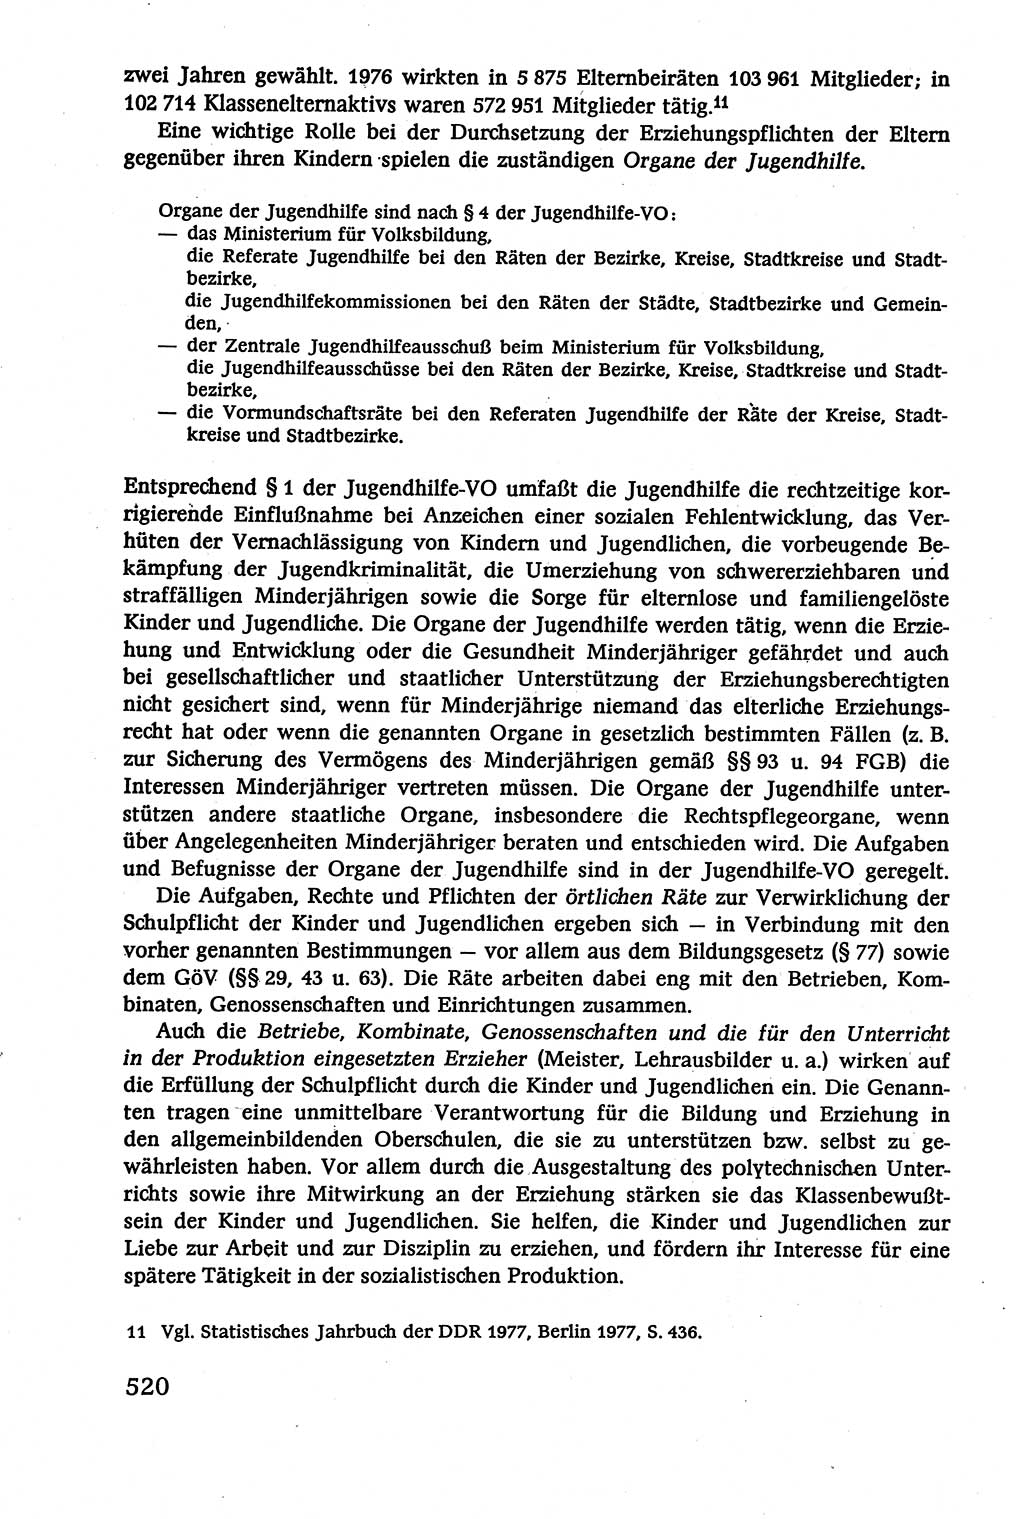 Verwaltungsrecht [Deutsche Demokratische Republik (DDR)], Lehrbuch 1979, Seite 520 (Verw.-R. DDR Lb. 1979, S. 520)